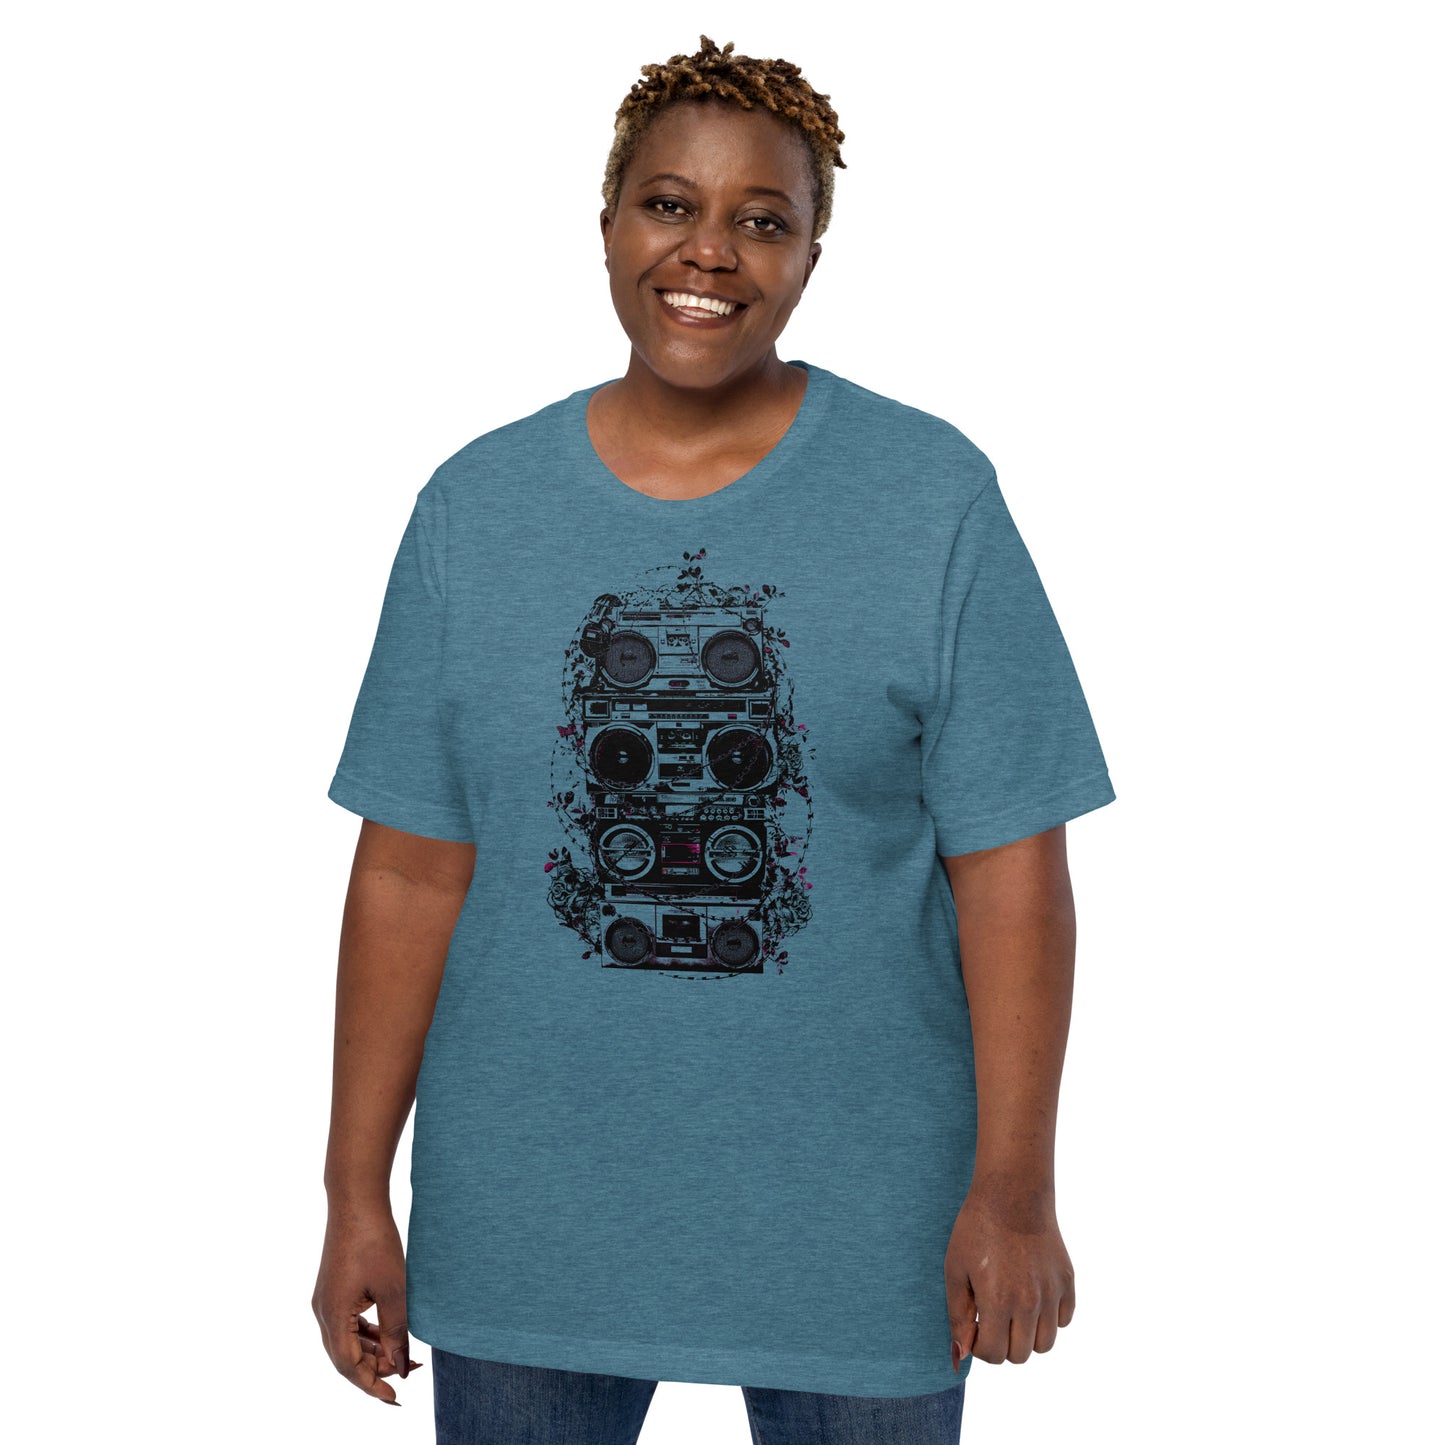 Boombox Razor Wire Vintage Tee Shirt, Music Graphic tee, Oversized T shirt, Unisex t-shirt